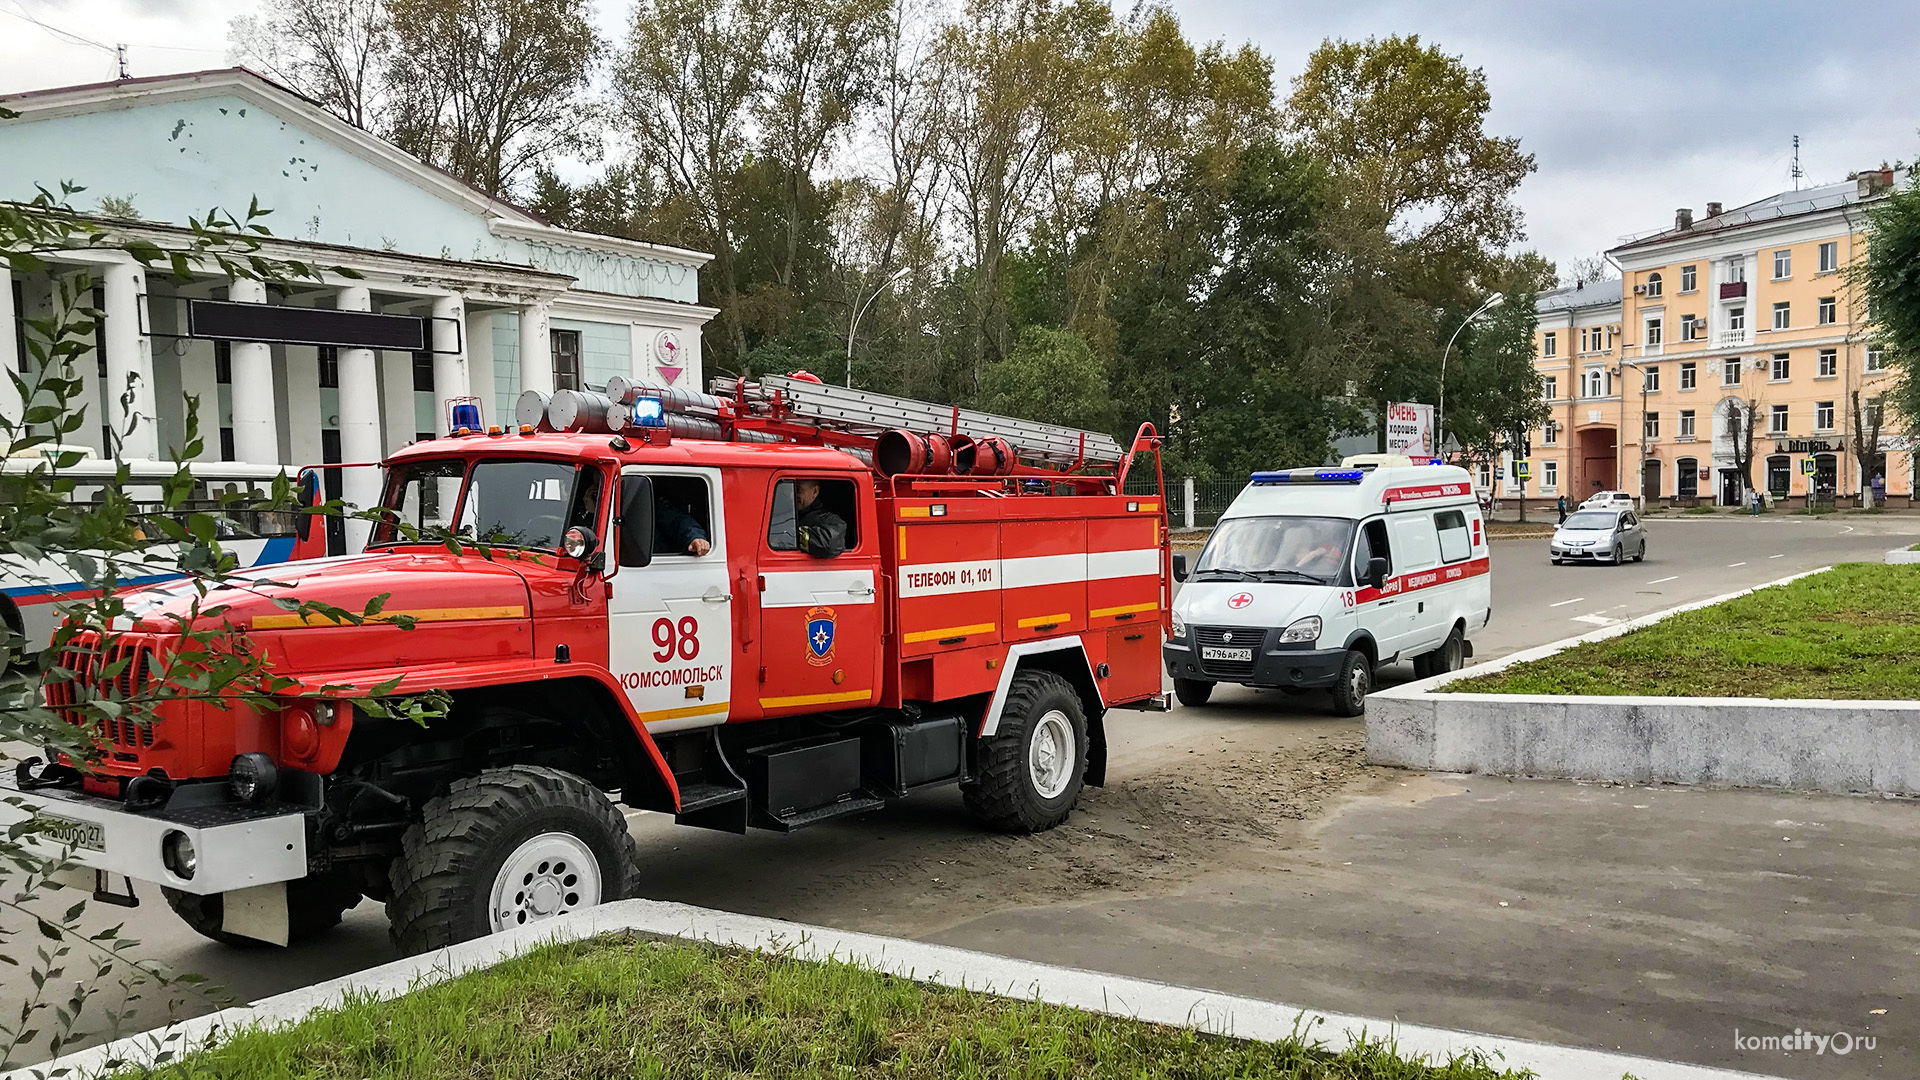 Оперативные службы прибыли на центральную площадь Комсомольска-на-Амуре, чтобы обезвредить то, чего там нет